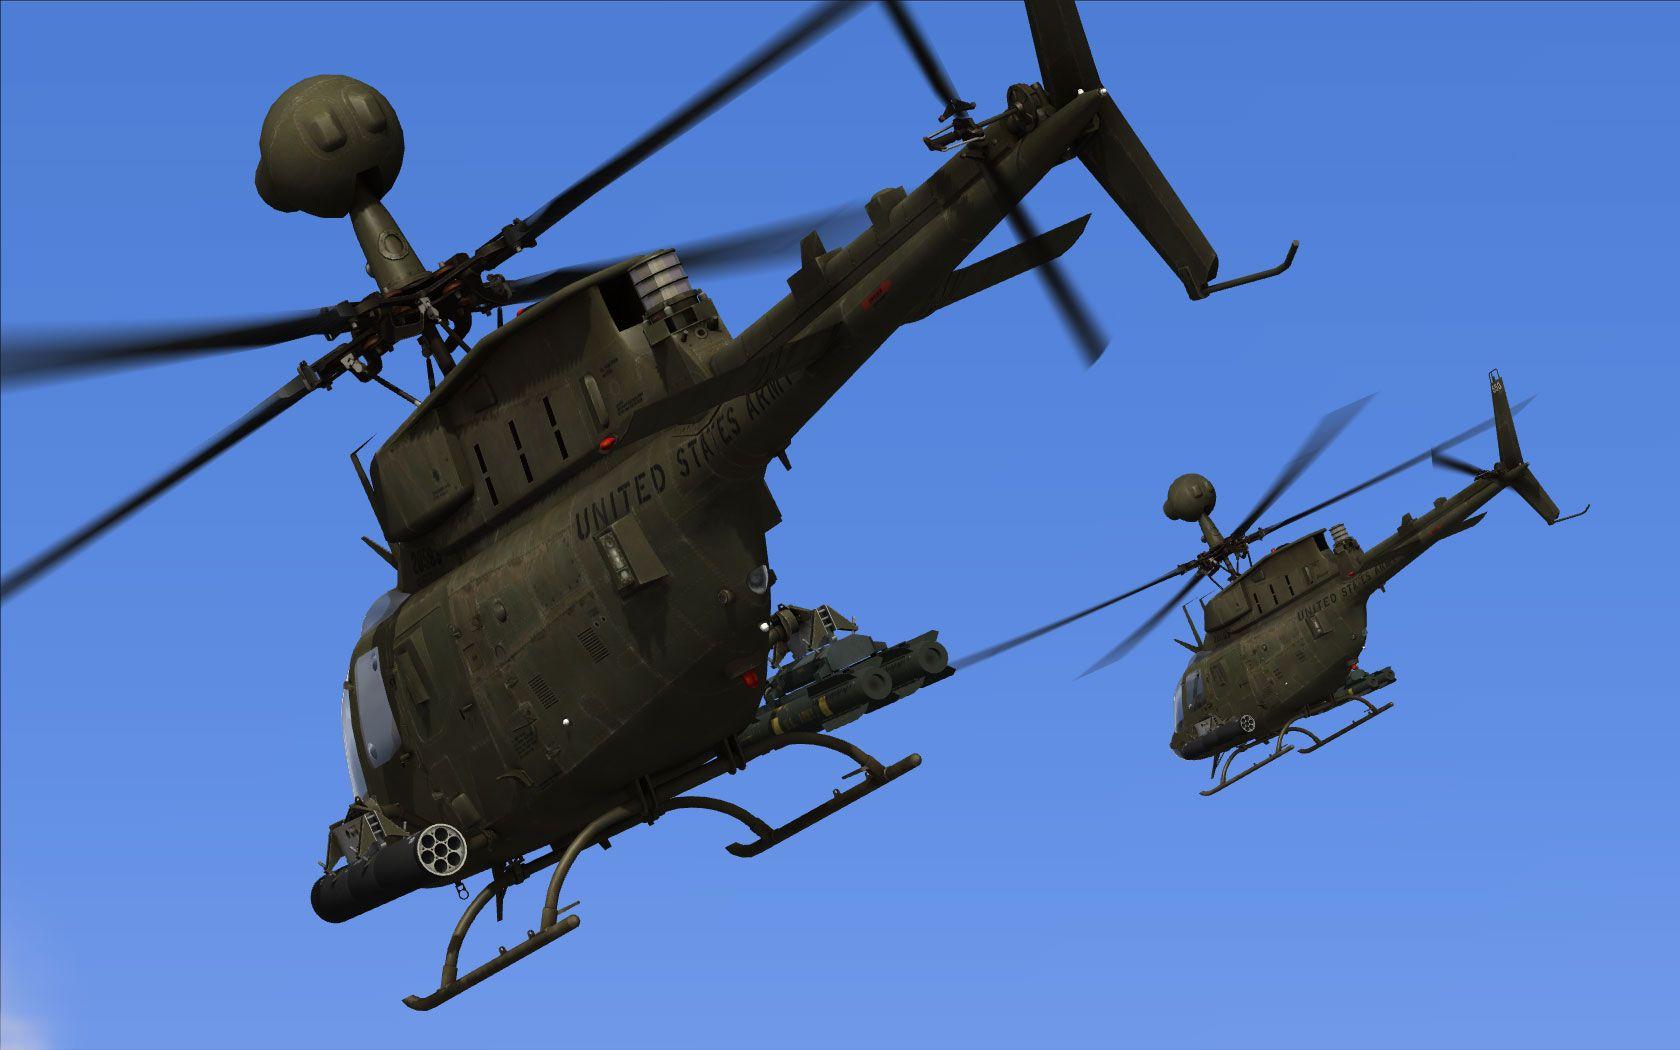 OH 58D Kiowa Warrior. OH 58 D KIOWA WARRIOR. Chopper, Aircraft